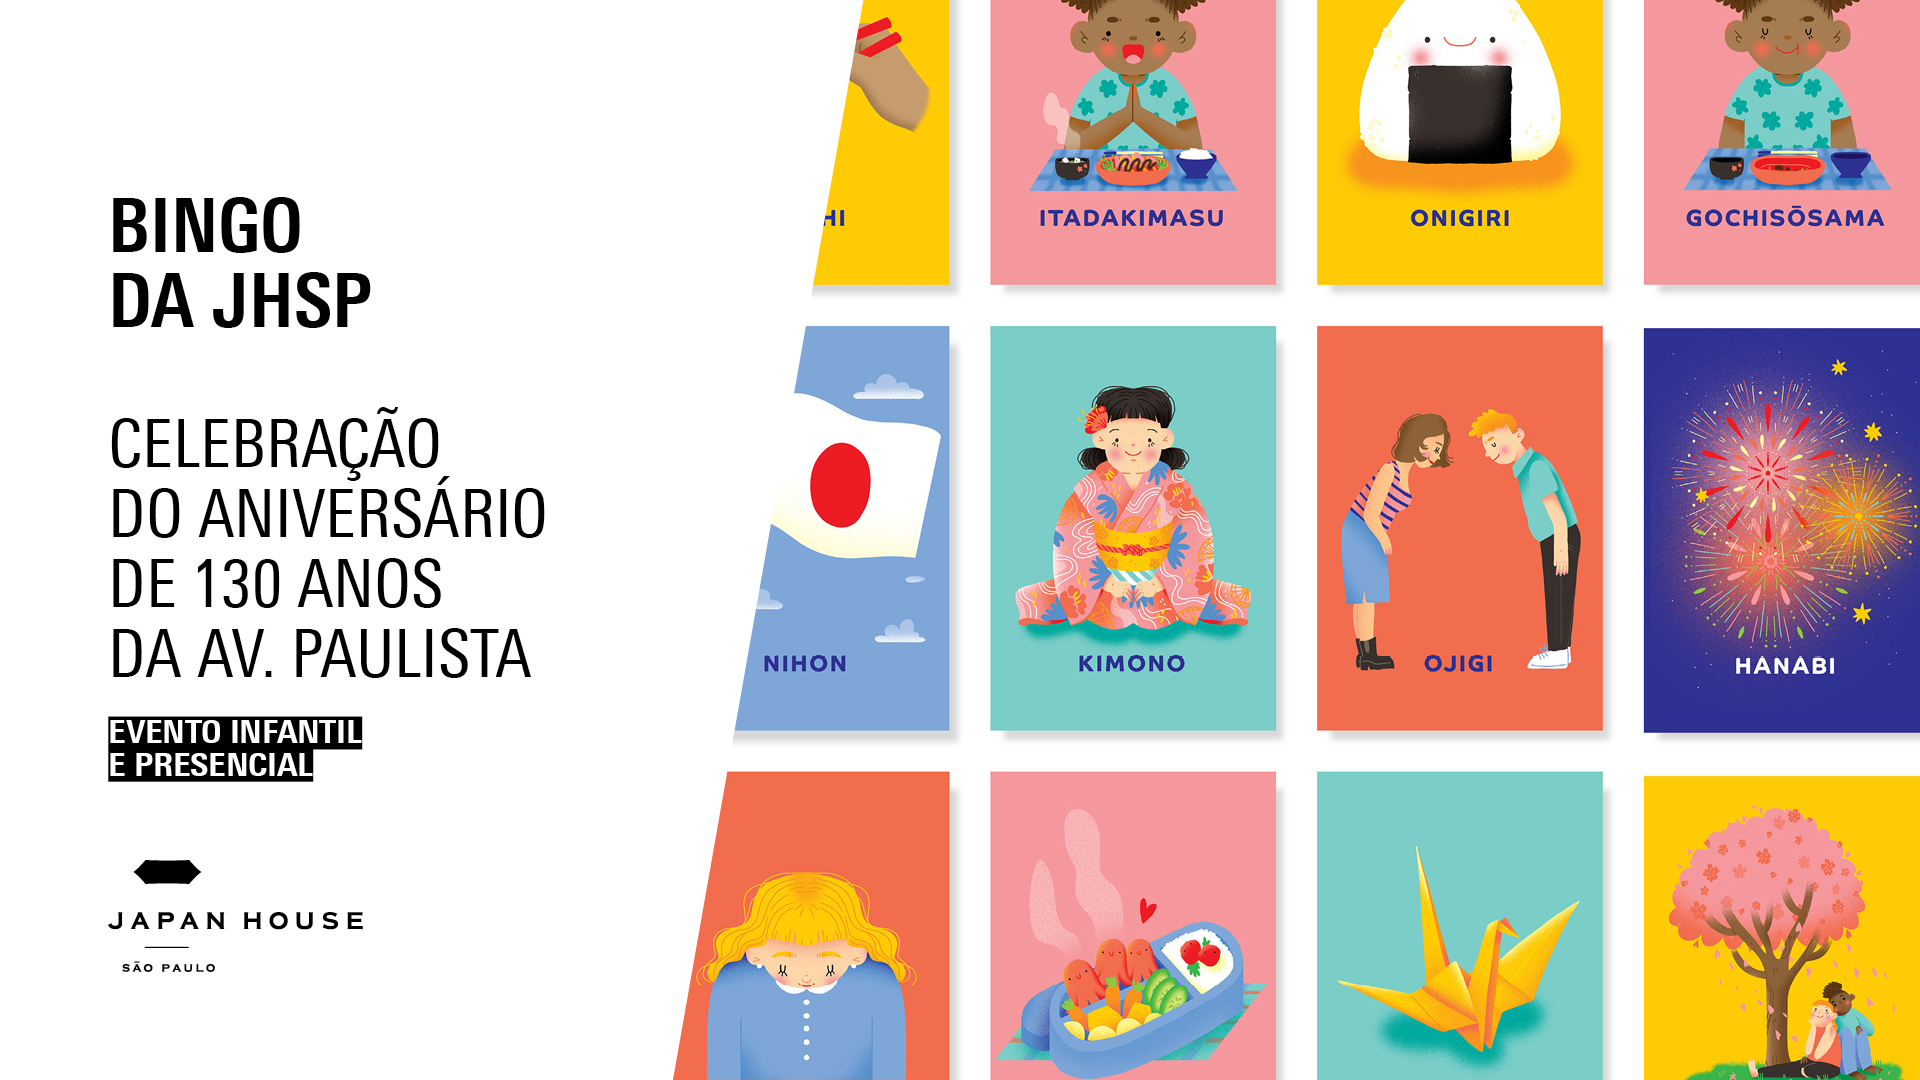 Banner informativo. Bingo da JHSP | Celebração do aniversário de 130 anos da Av. Paulista.  Evento infantil e presencial. Ao lado direito, cartelas apresentam ilustrações coloridas com palavras em japonês.